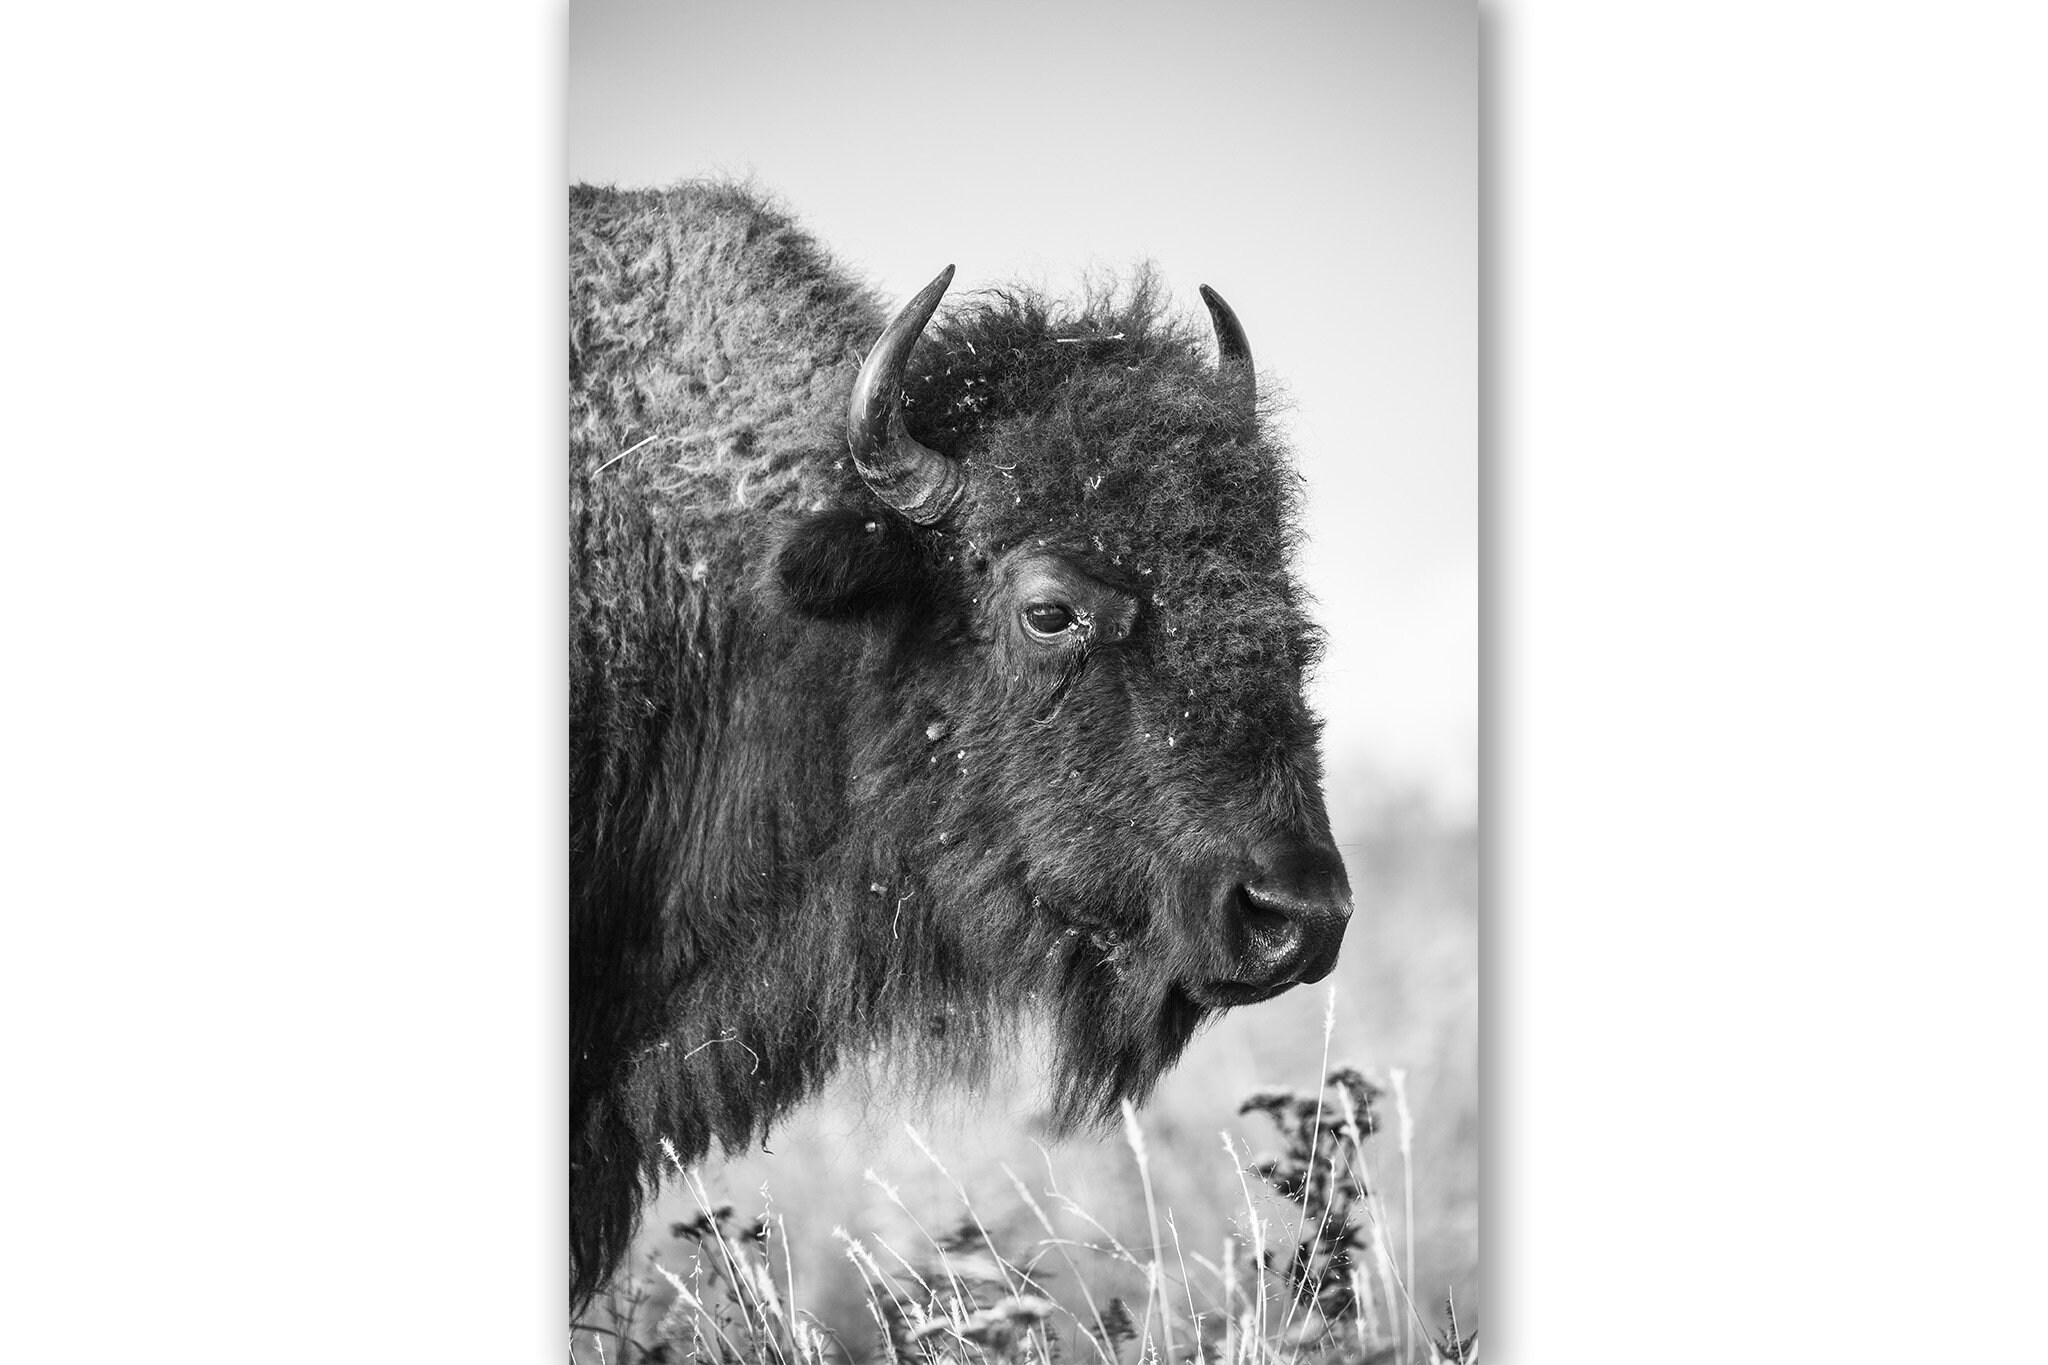 Western Fotografie Druck Vertikal schwarz weiß Bild von Büffel auf  Tallgrass Prairie in Oklahoma Bison Wall Art Wildlife Decor -  Schweiz